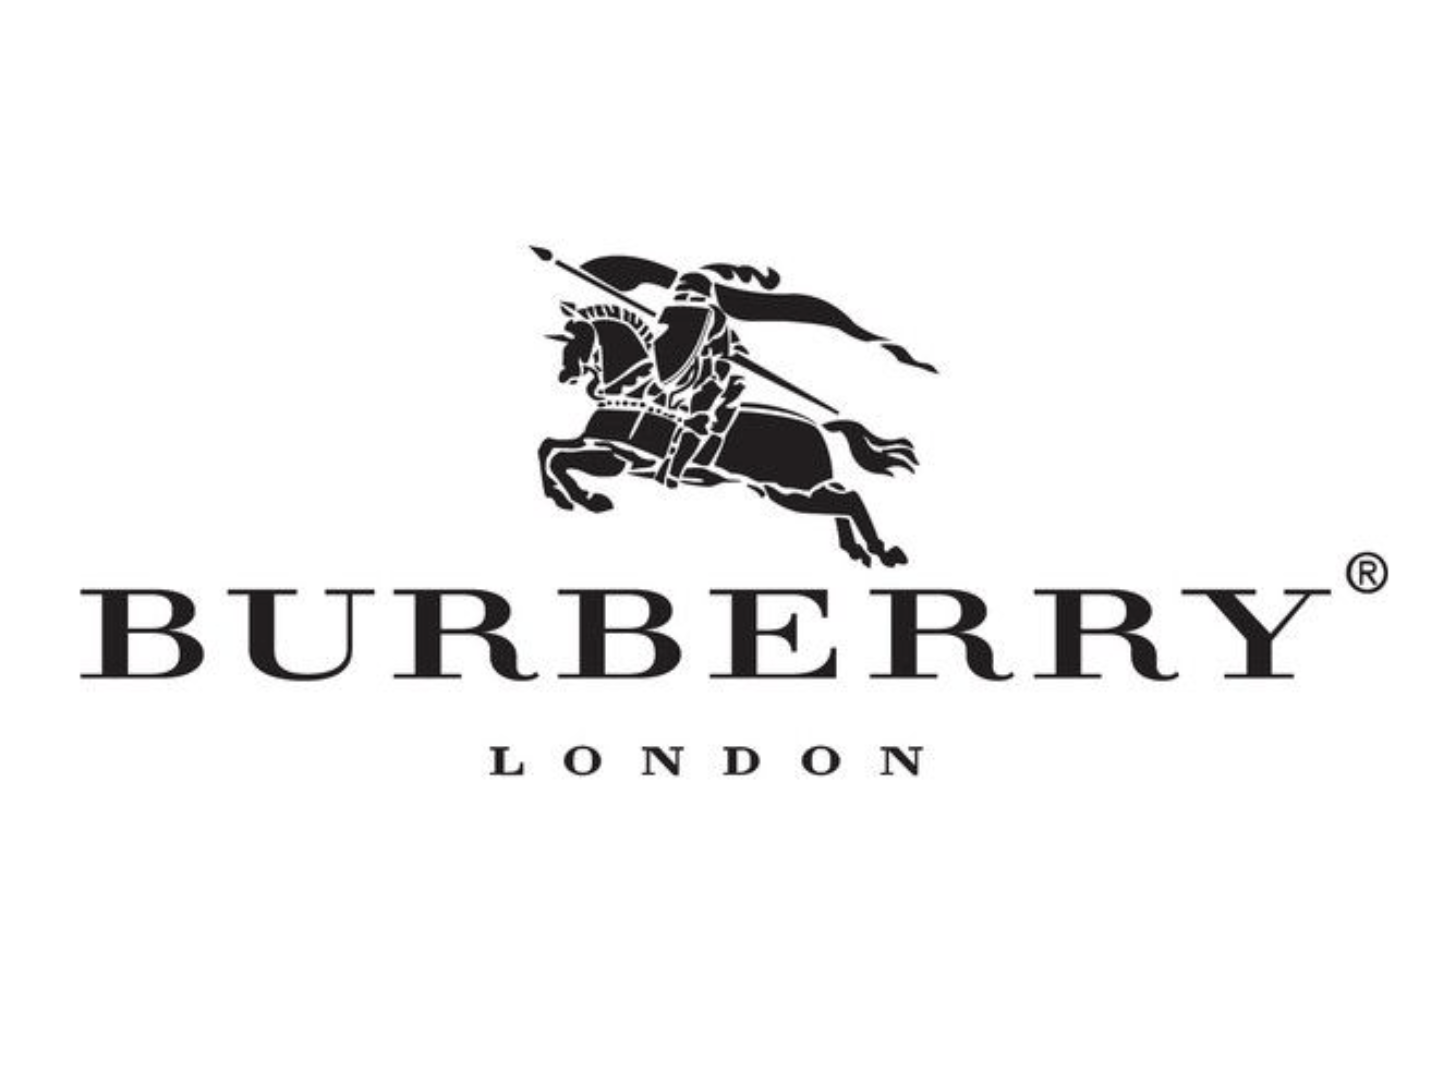 burberry壁纸logo图片